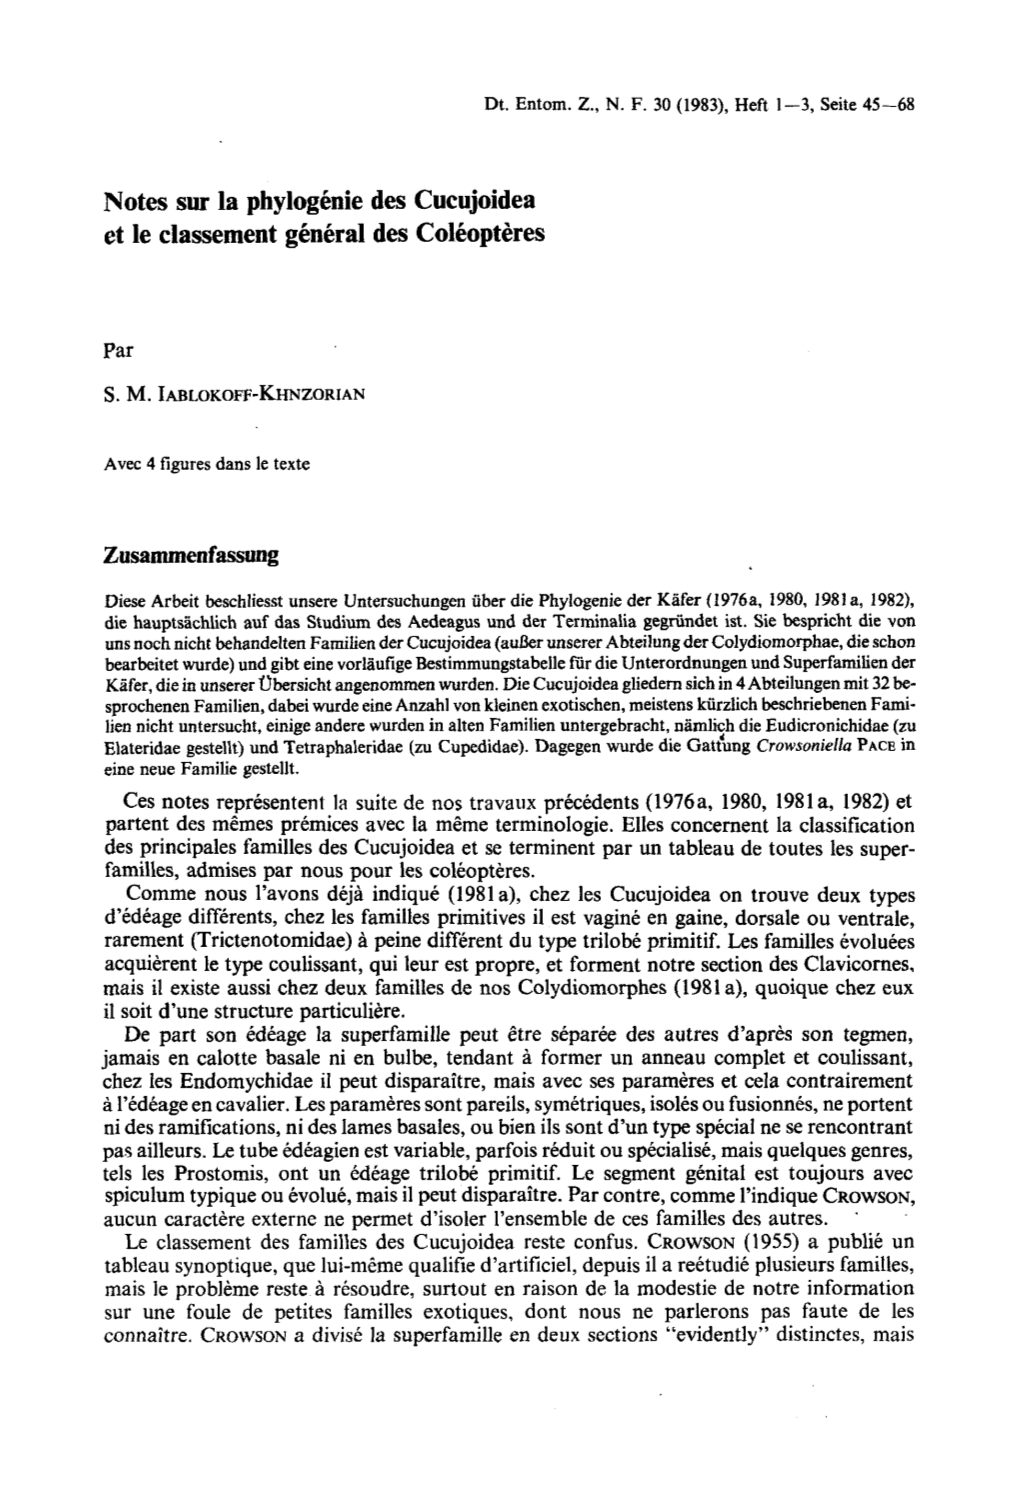 Notes Sur La Phylogénie Des Cucujoidea Et Le Classement